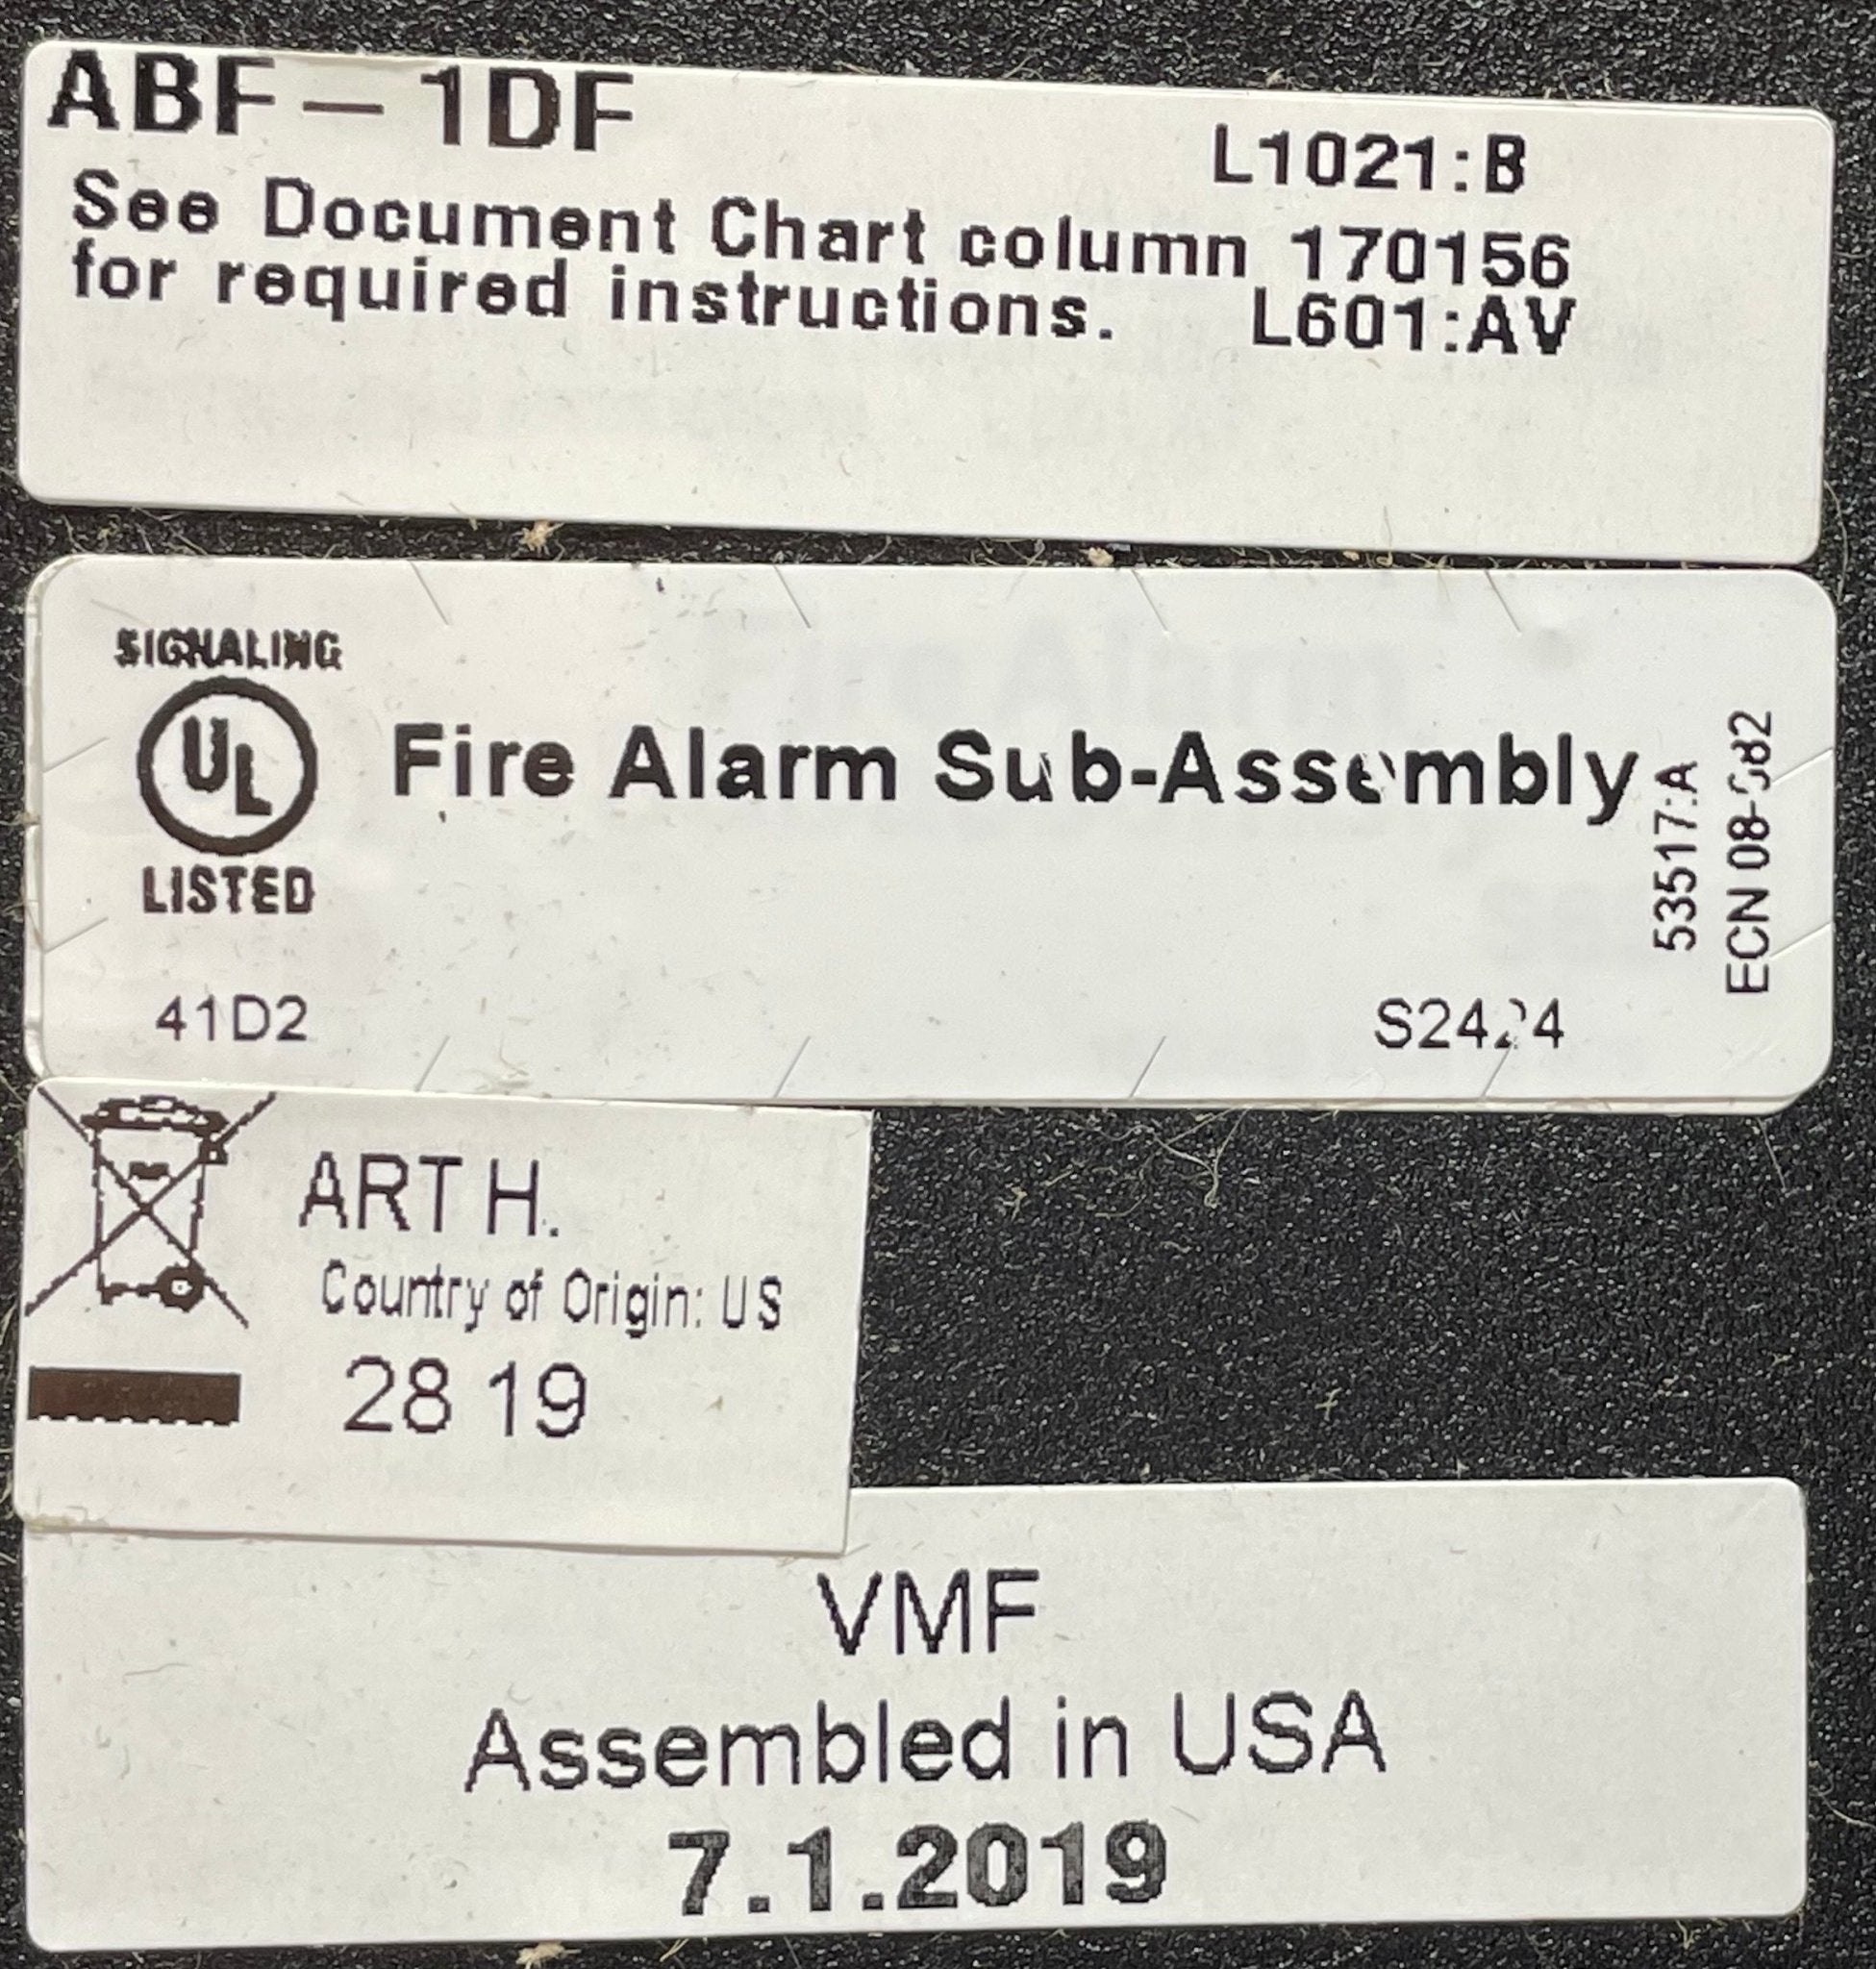 Firelite ABF-1DF - The Fire Alarm Supplier